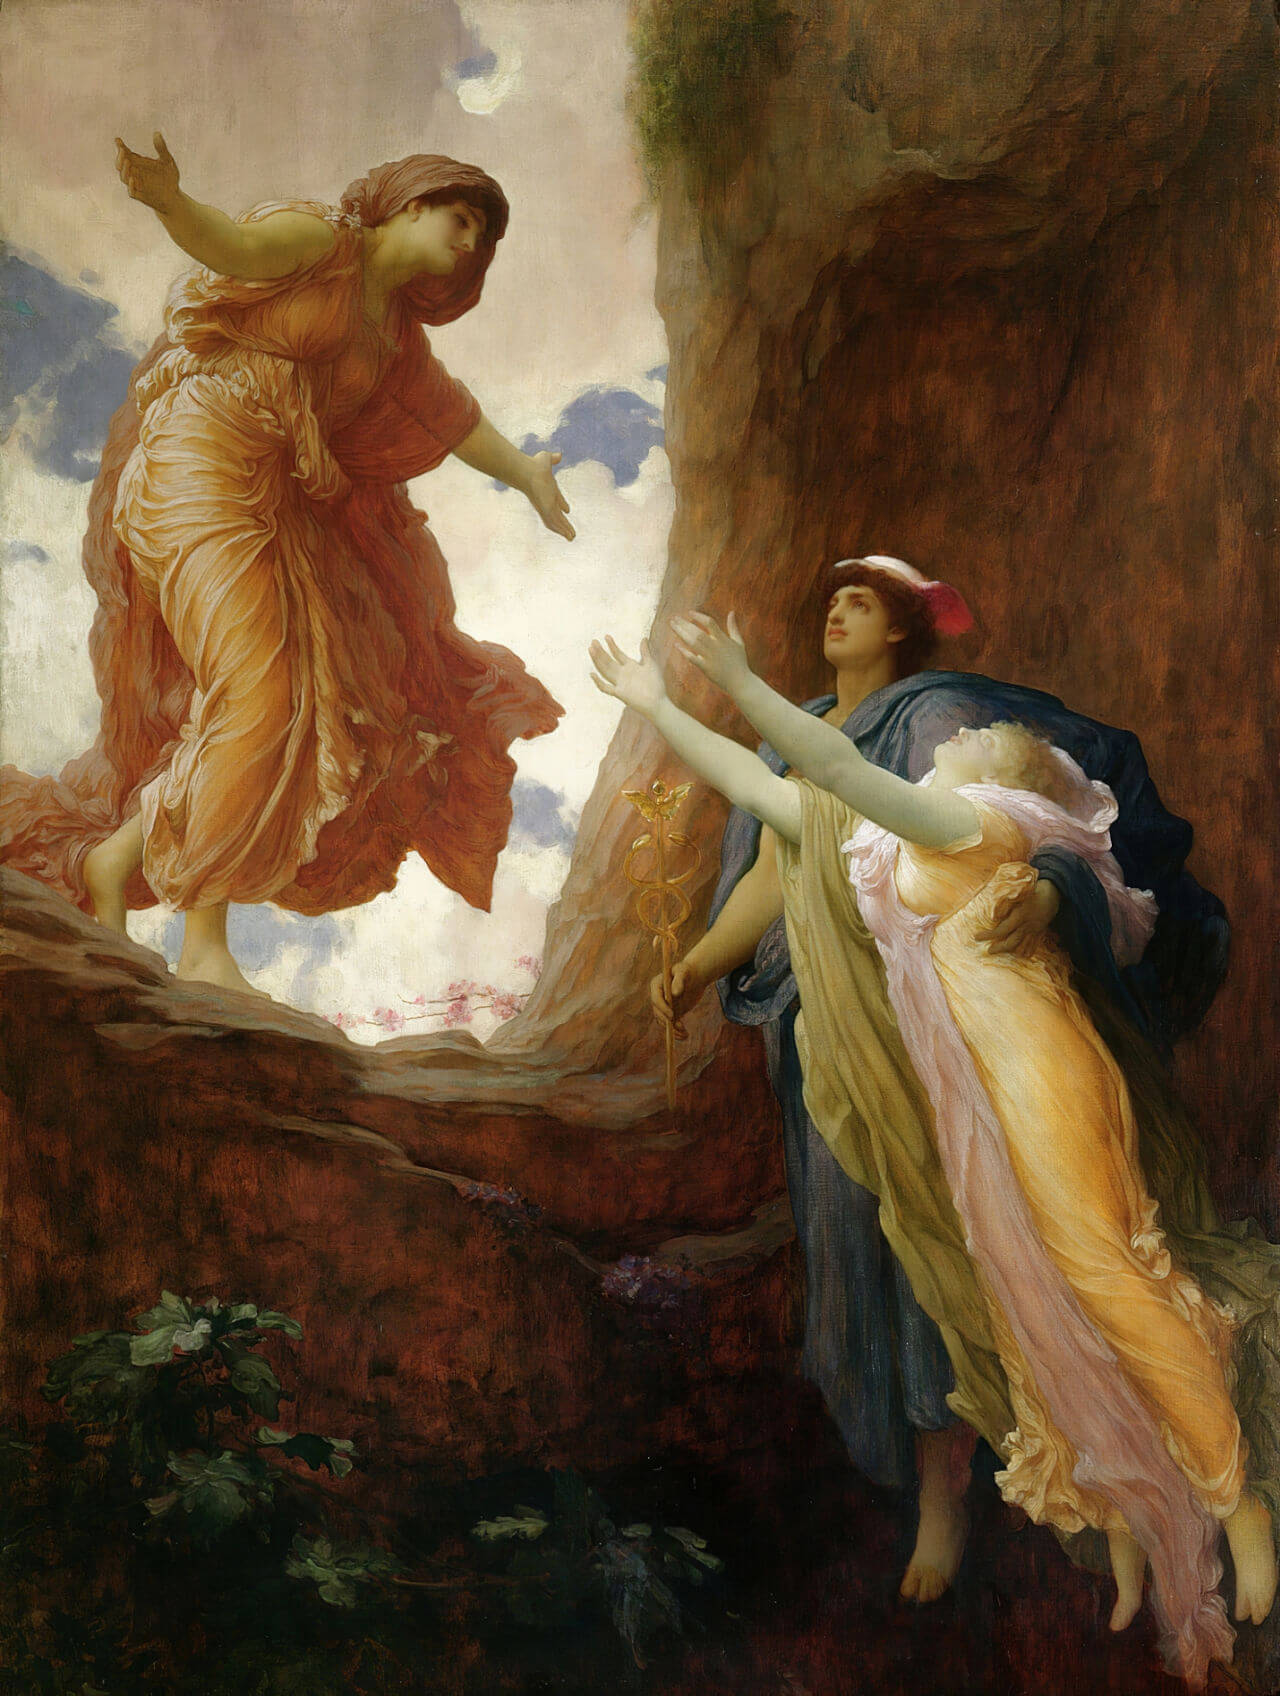 Rückkehr der Persephone (The Return Of Persephone -1891) gemalt von Frederic Leighton. Zu sehen ist wie Hermes Persephone (rechts im Bild) aus der Unterwelt ihrer Mutter Demeter (links im Bild) zurückbringt.